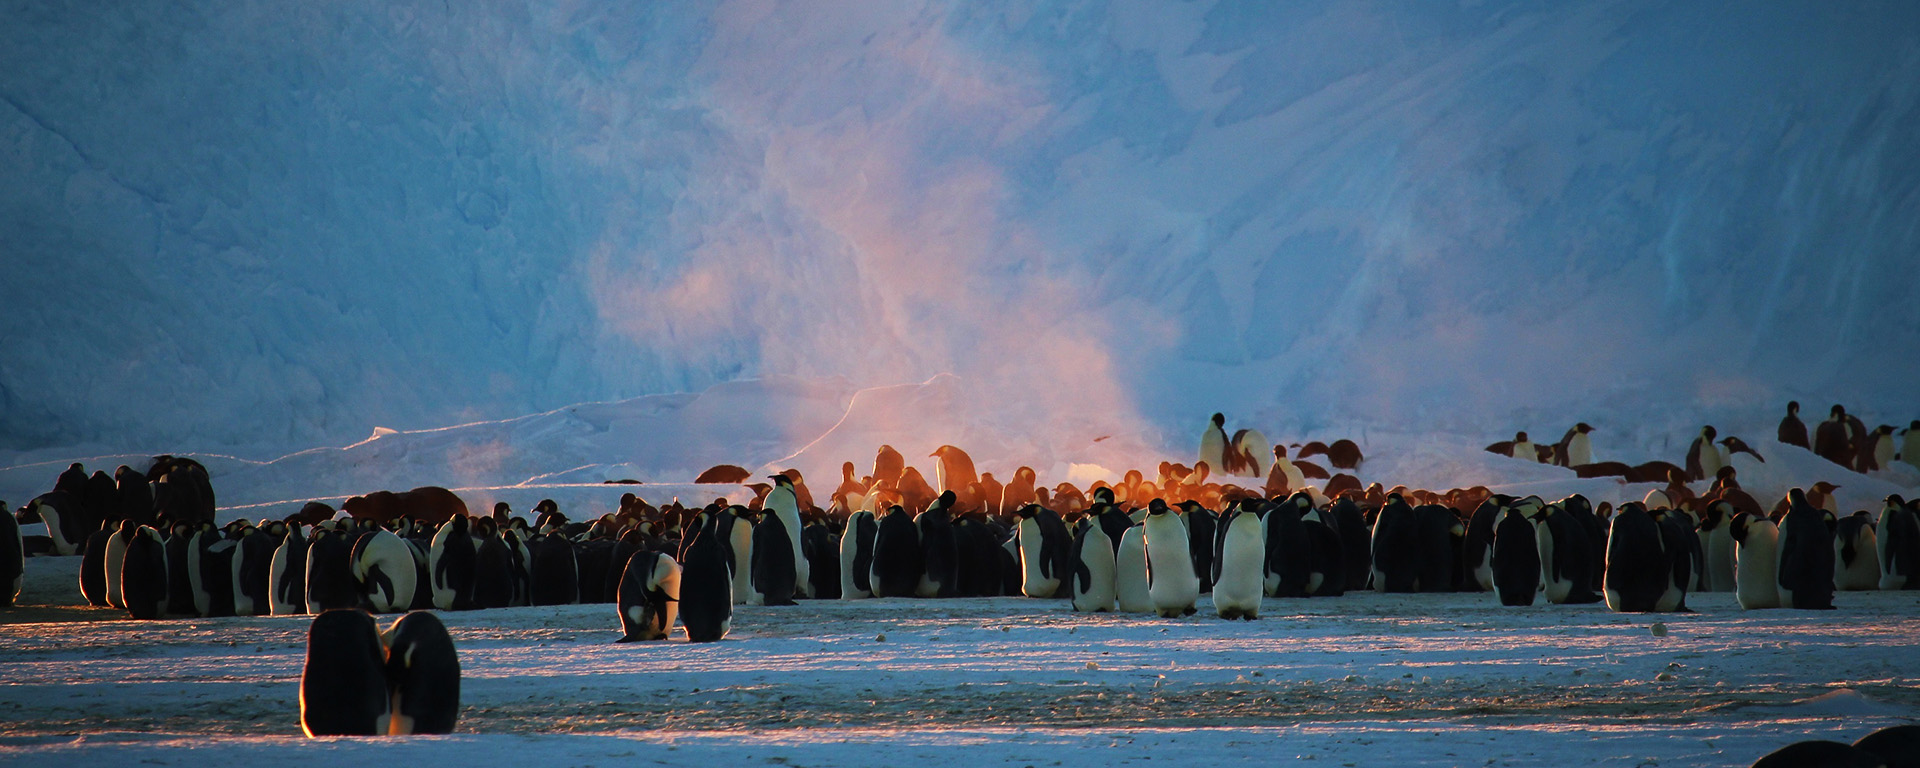 Steam coming from emperor penguins huddling together